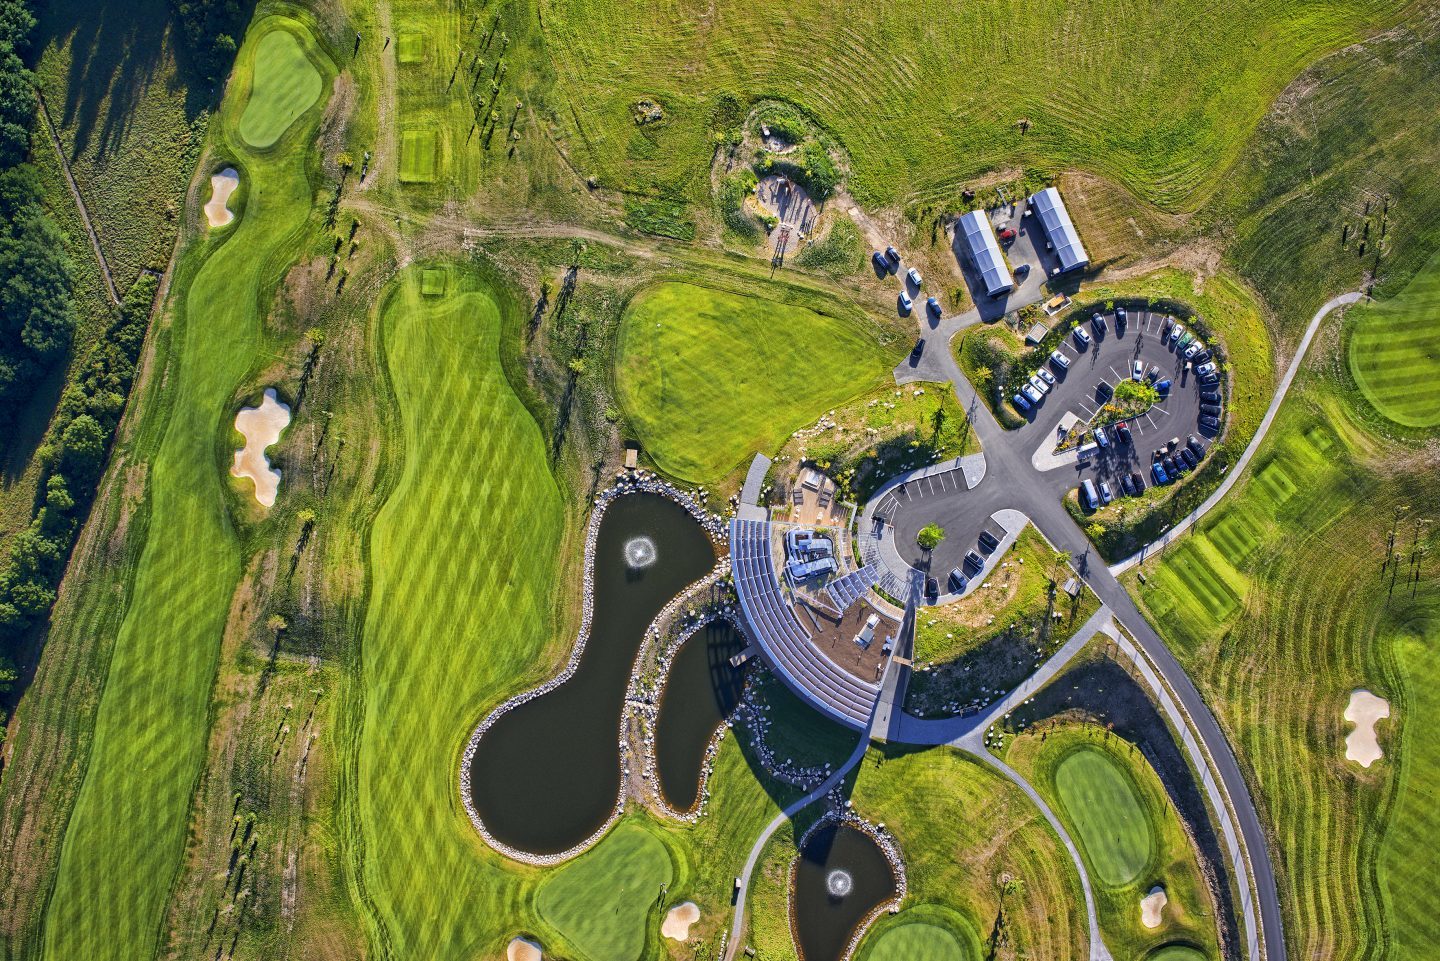 Panorama Golf Resort / Huť architektúry Martin Rajniš